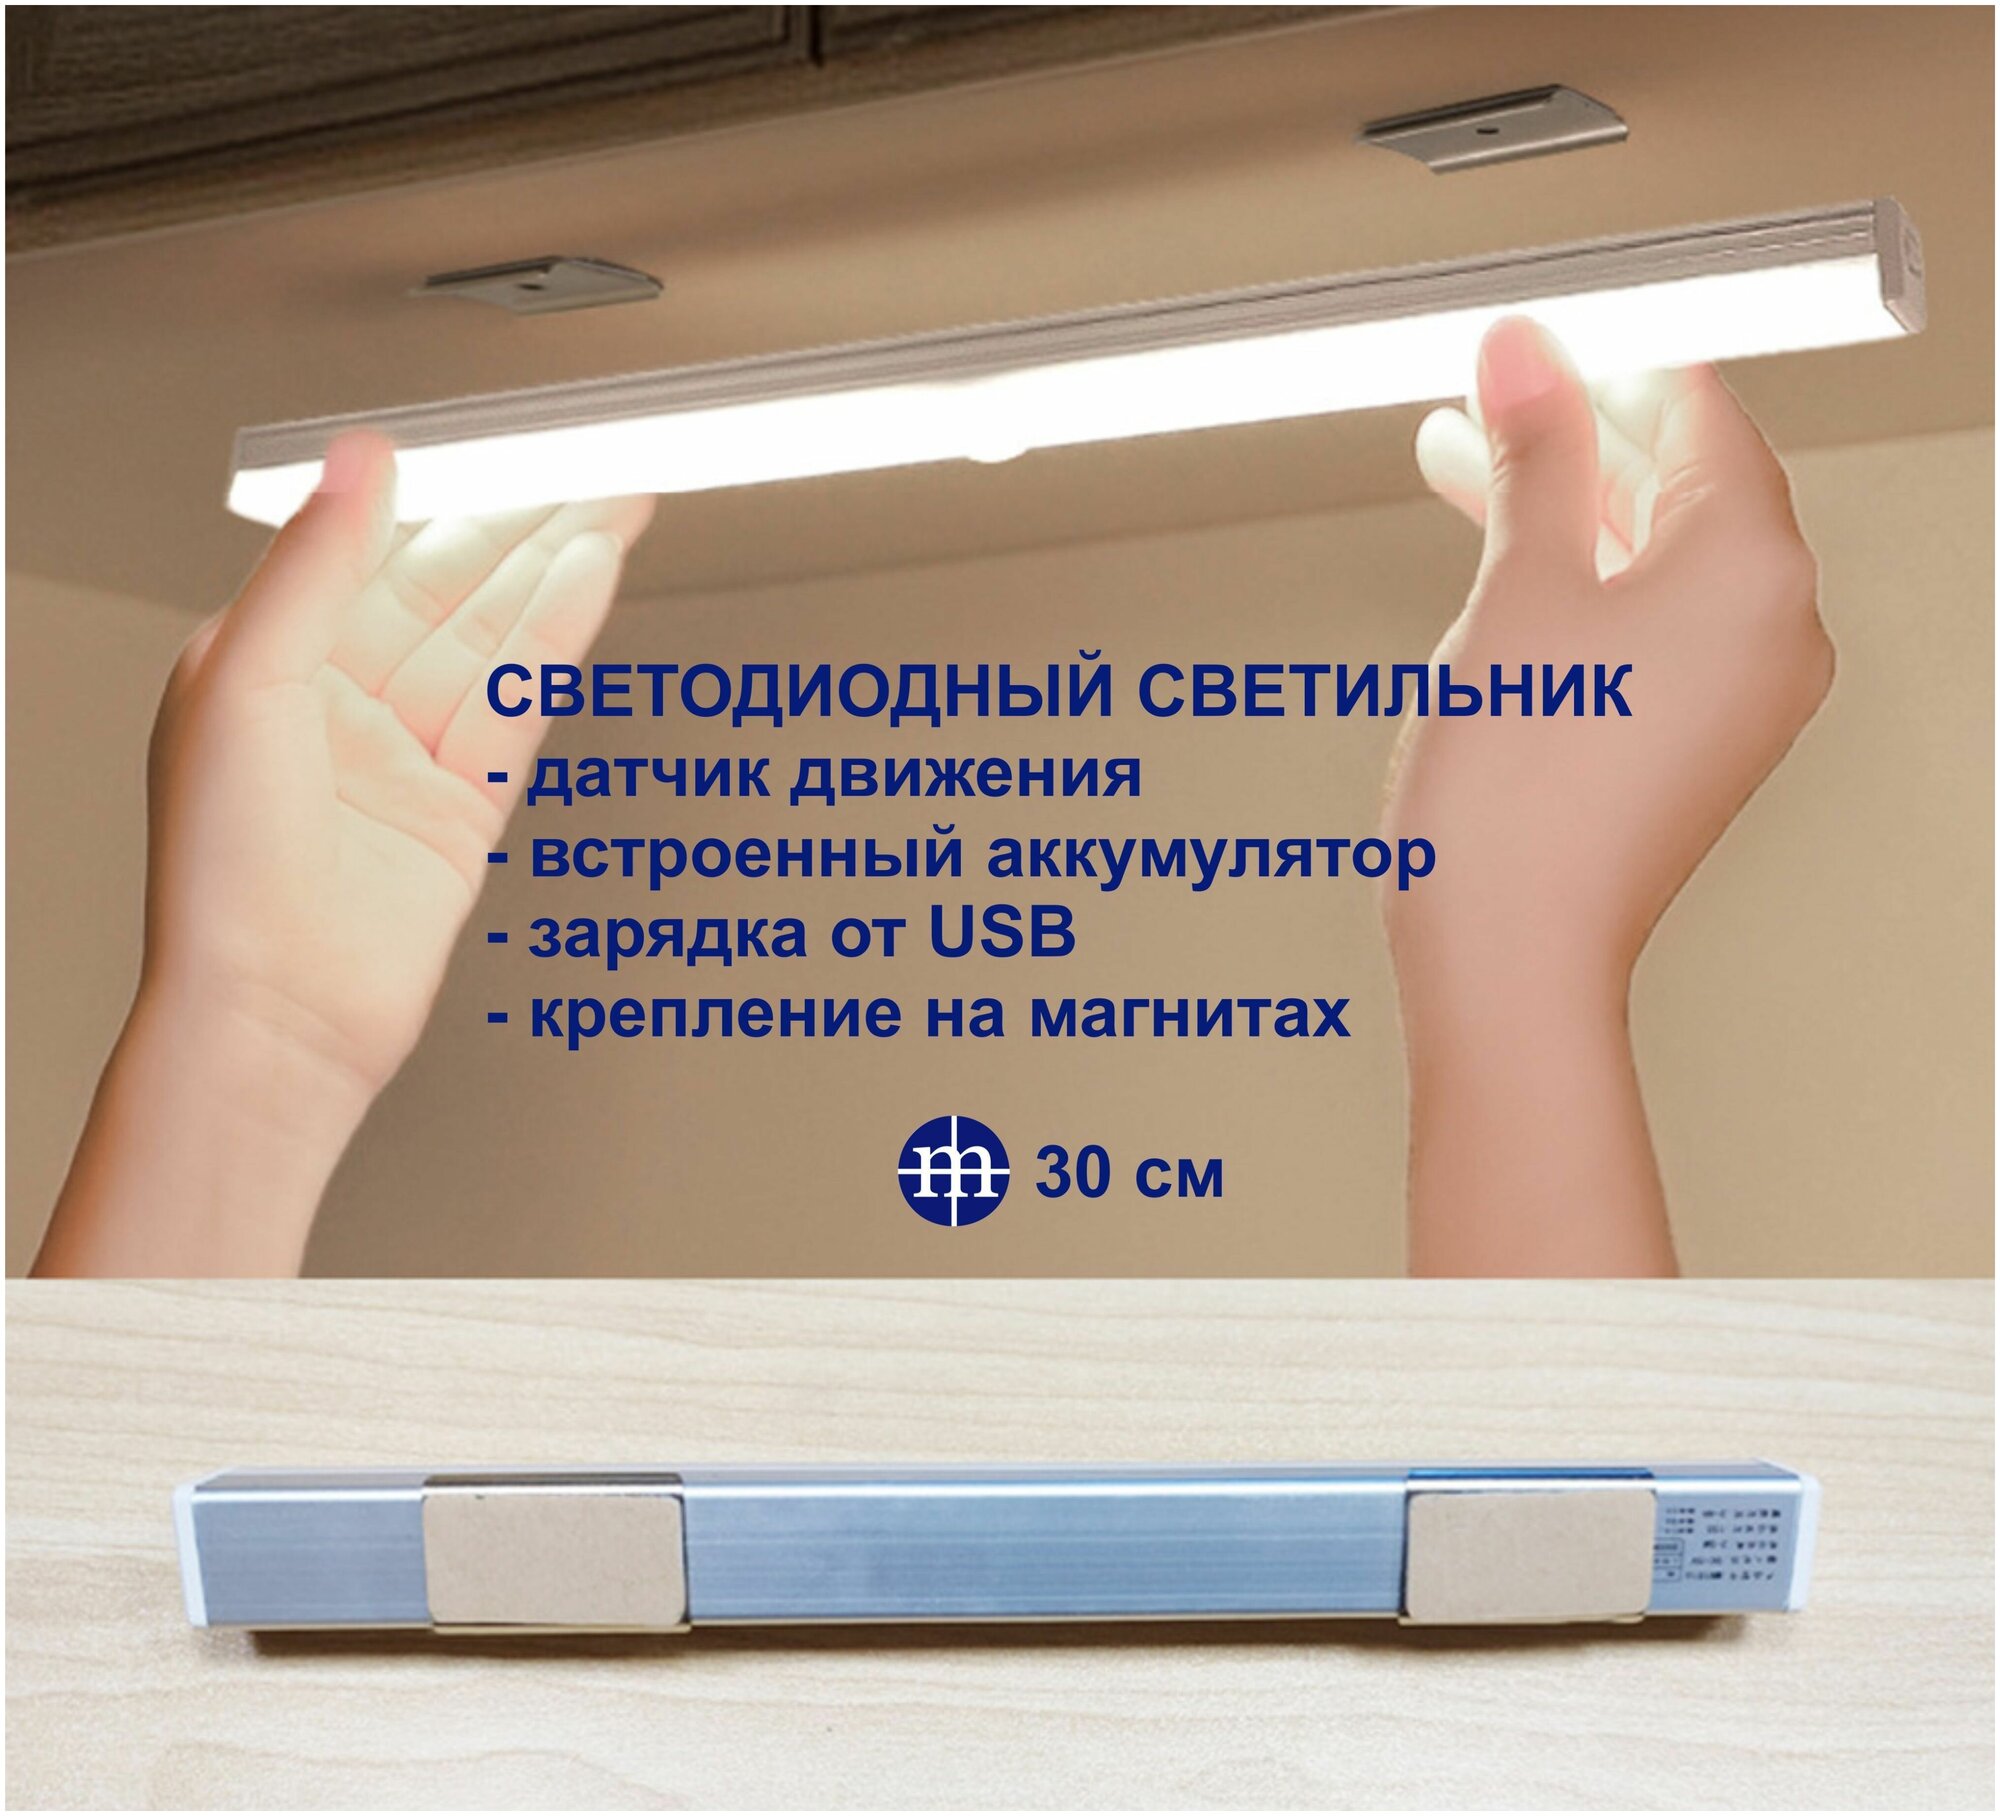 Светодиодный светильник MIKRON СВ23-30 с датчиком движения для шкафа, кухни, прихожей, гаража, ( длина 30см )